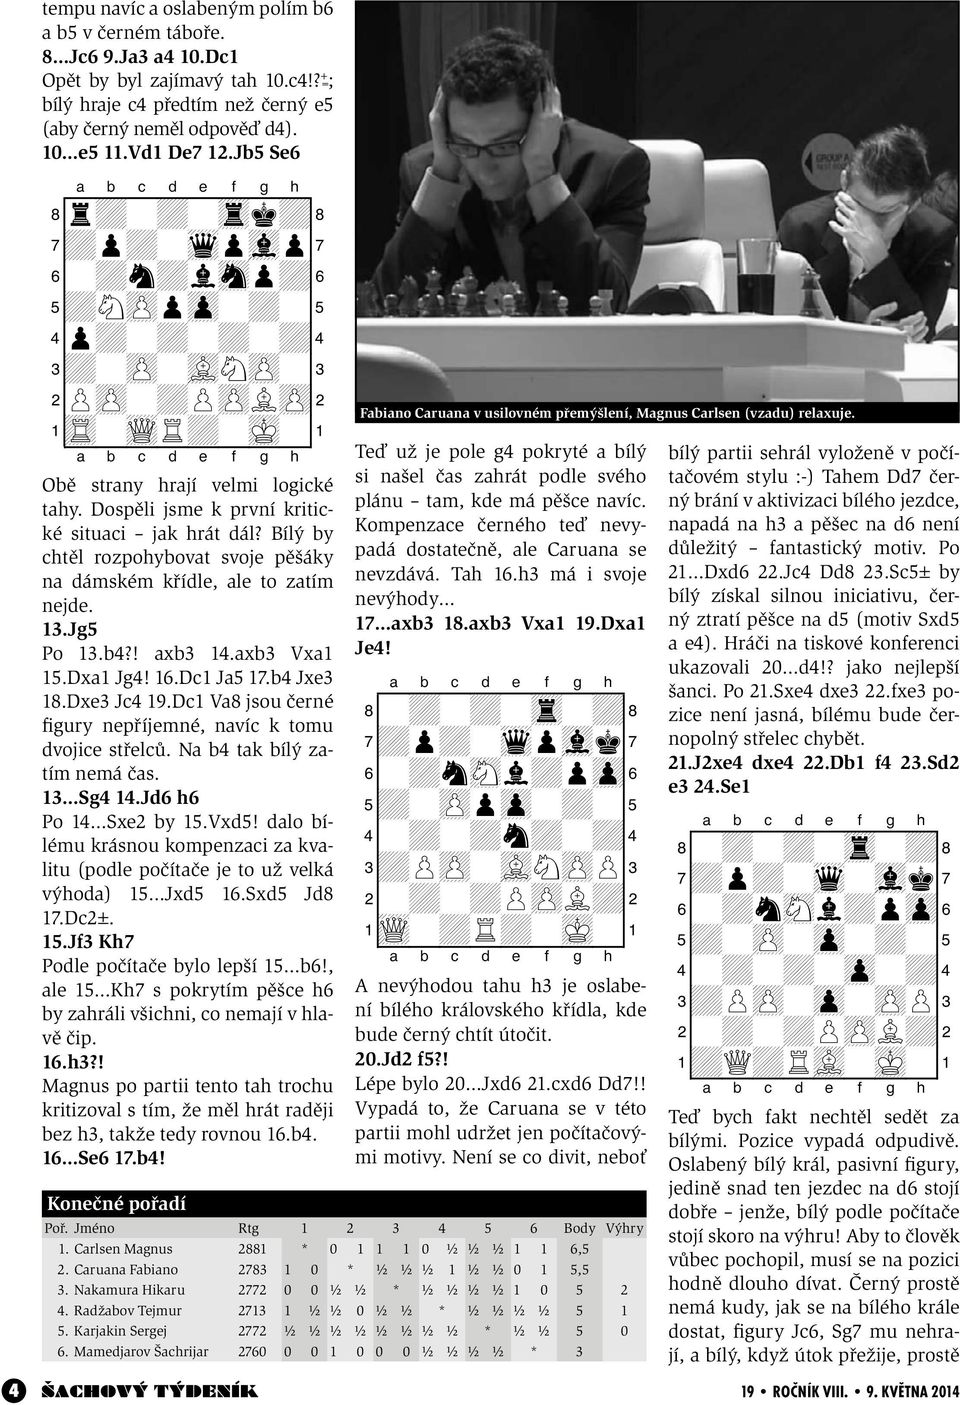 Dospěli jsme k první kritické situaci jak hrát dál? Bílý by chtěl rozpohybovat svoje pěšáky na dámském křídle, ale to zatím nejde. 13.Jg5 Po 13.b4?! axb3 14.axb3 Vxa1 15.Dxa1 Jg4! 16.Dc1 Ja5 17.